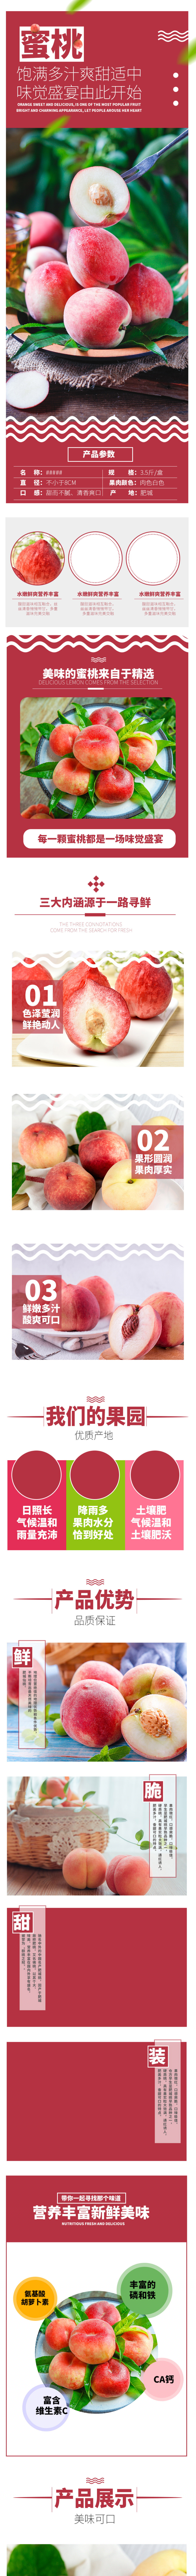 生鲜新鲜水蜜桃桃子详情页模板